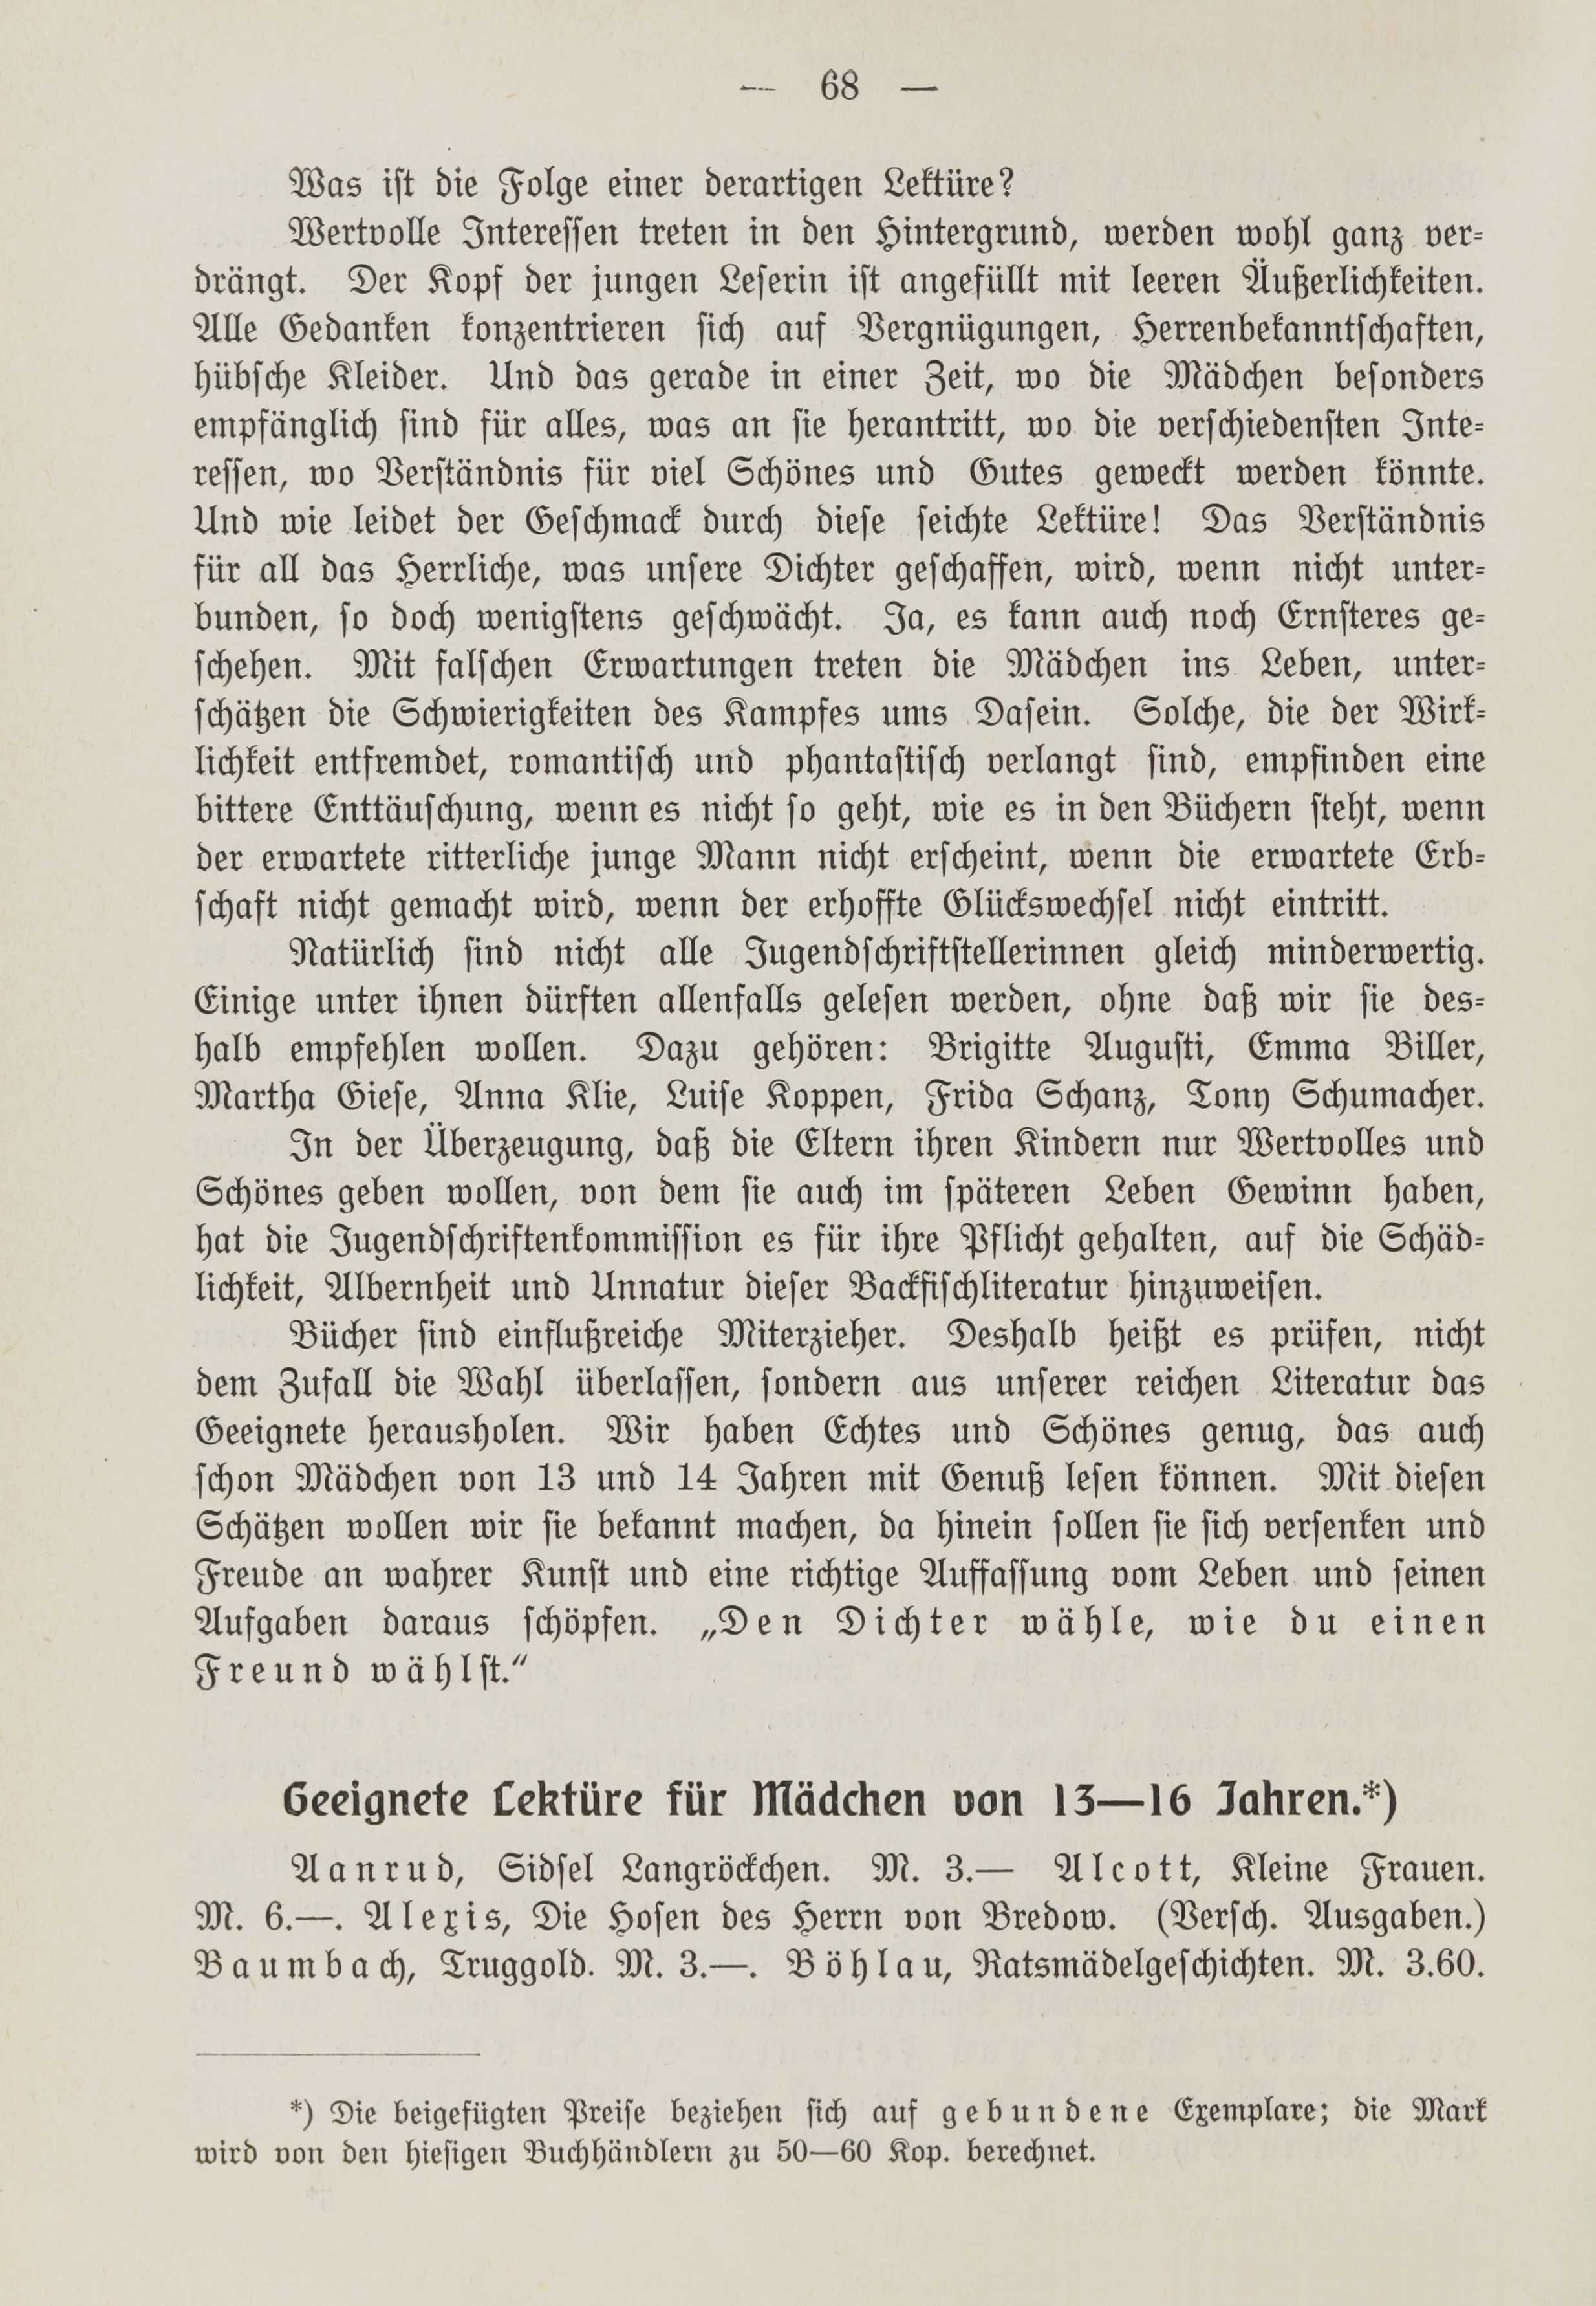 Deutsche Monatsschrift für Russland [1] (1912) | 75. (68) Основной текст